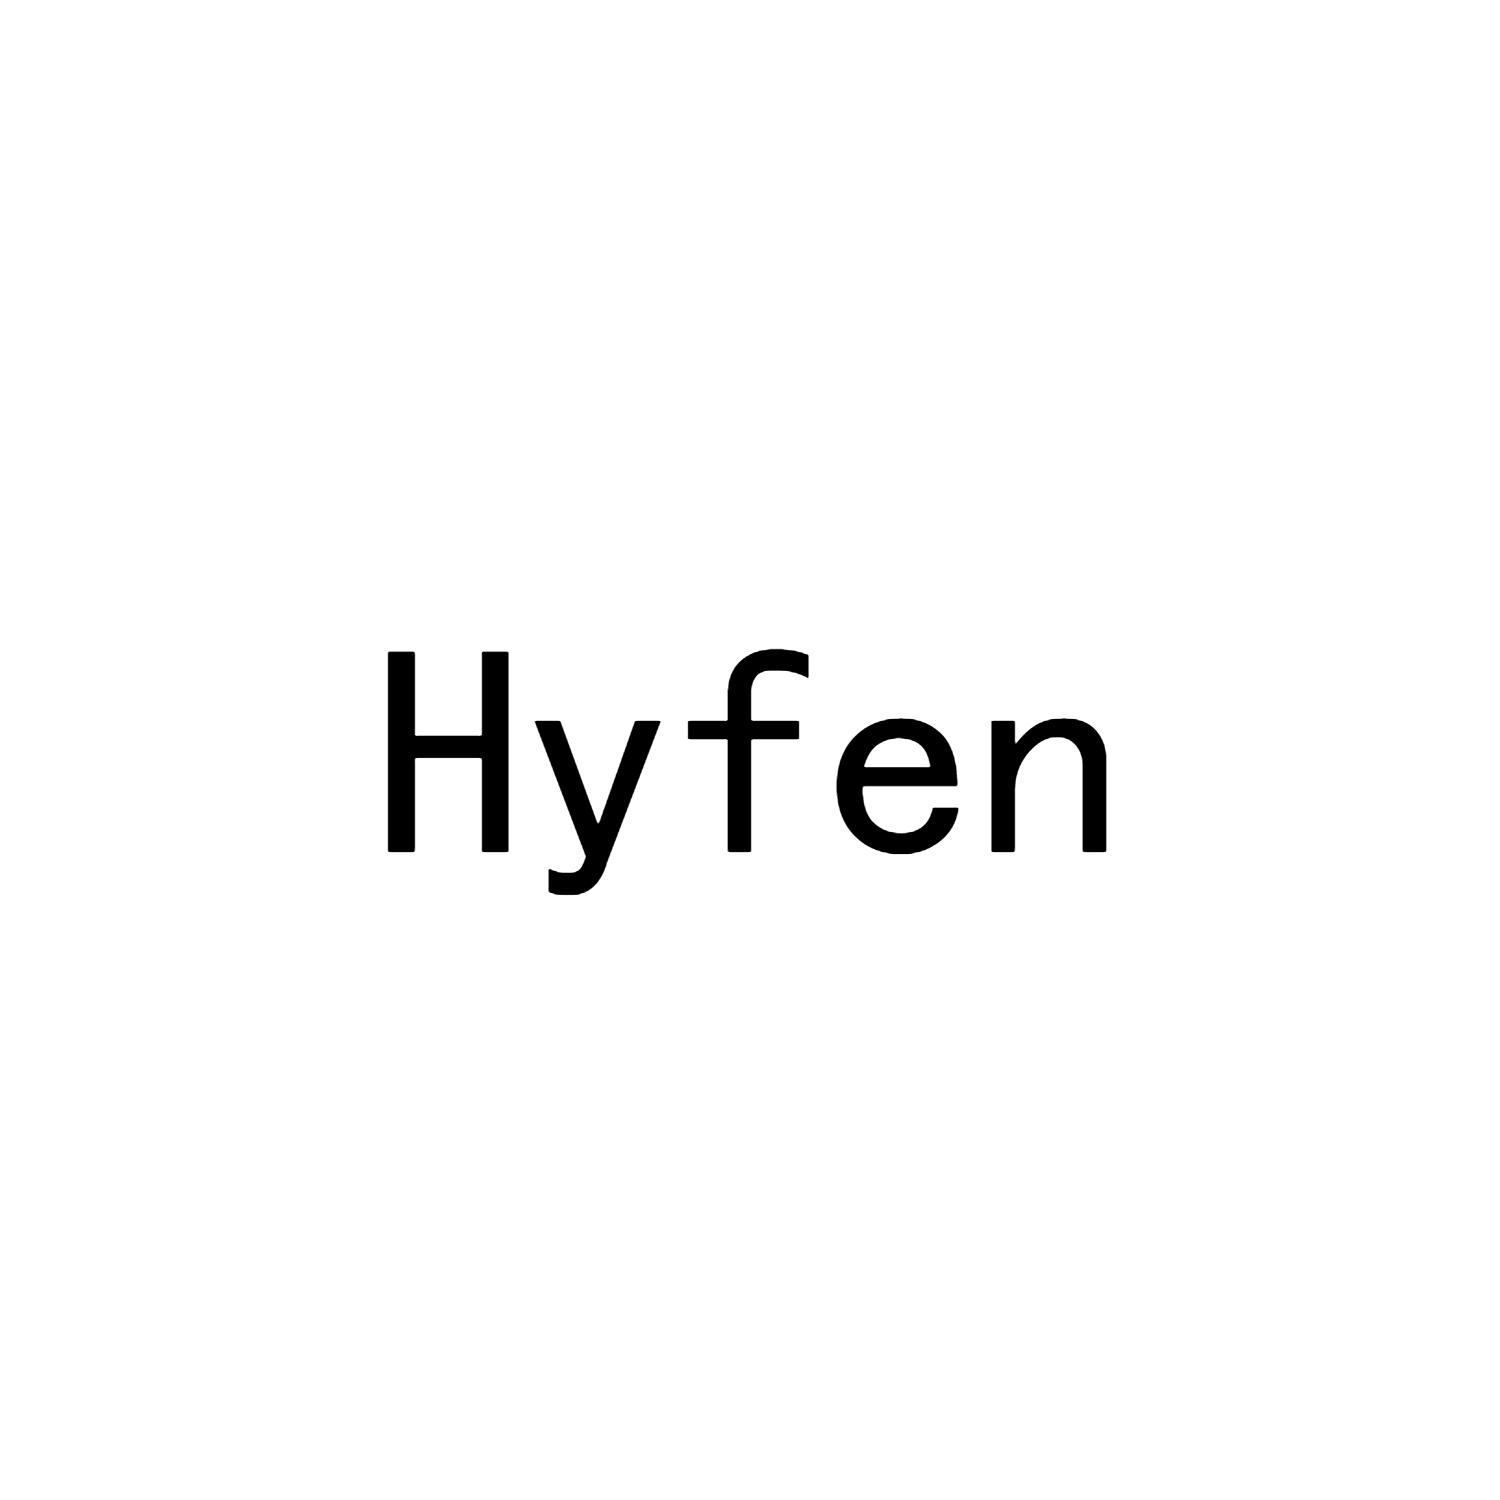 Hyfen